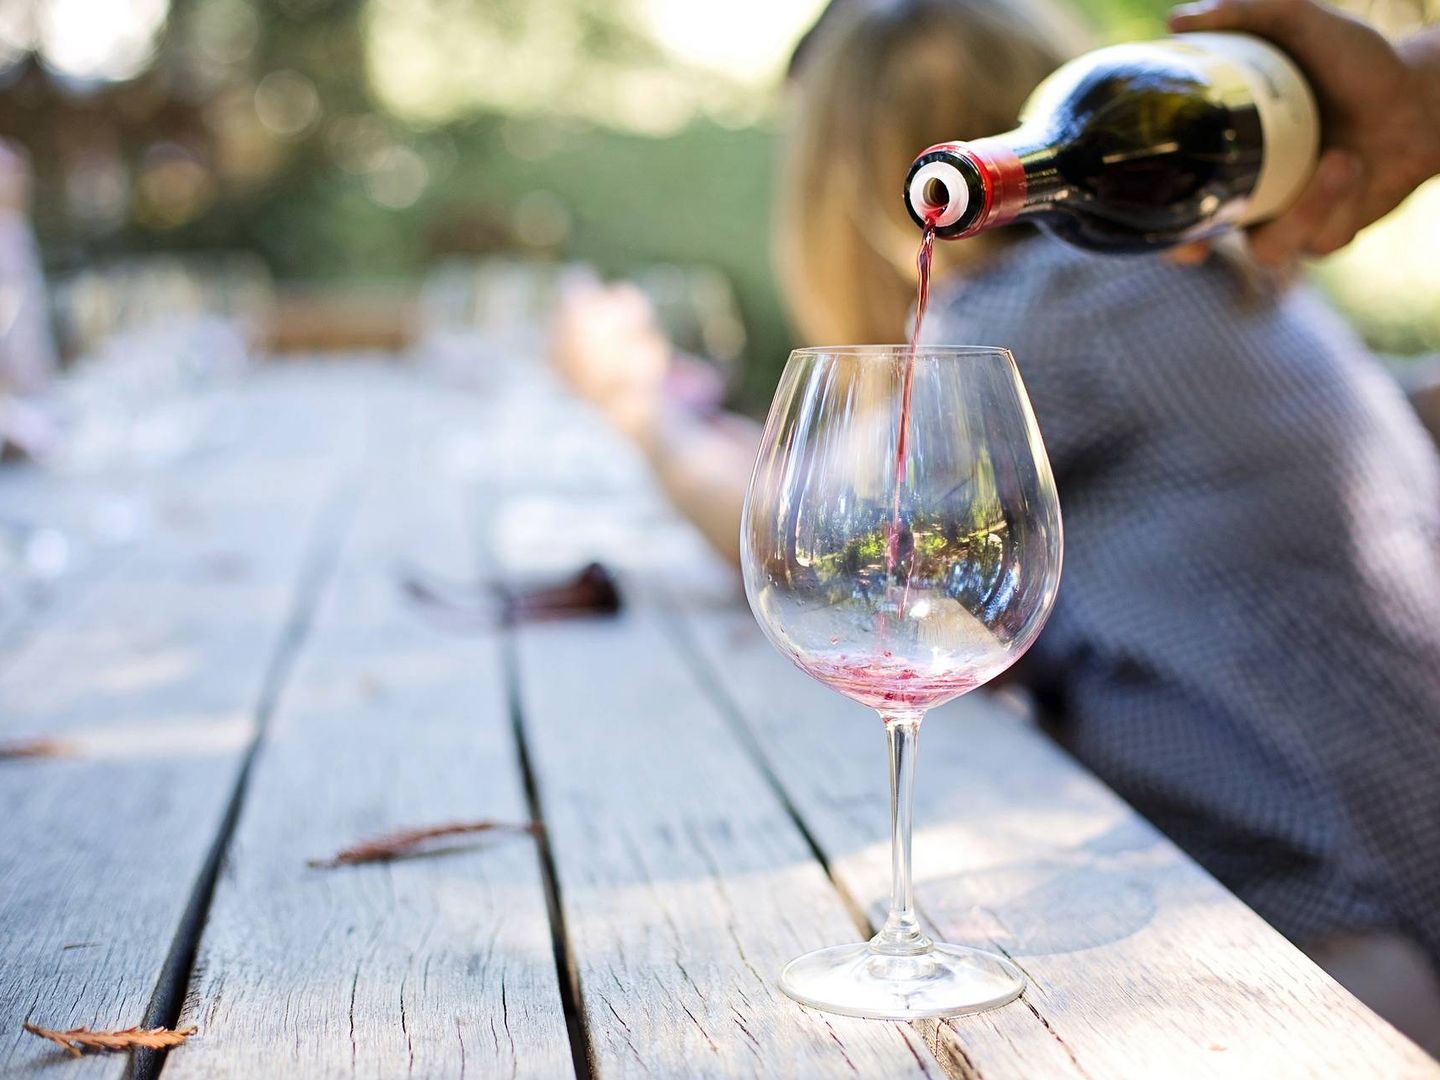 La presentación del vino es esencial (Foto: Pixabay)